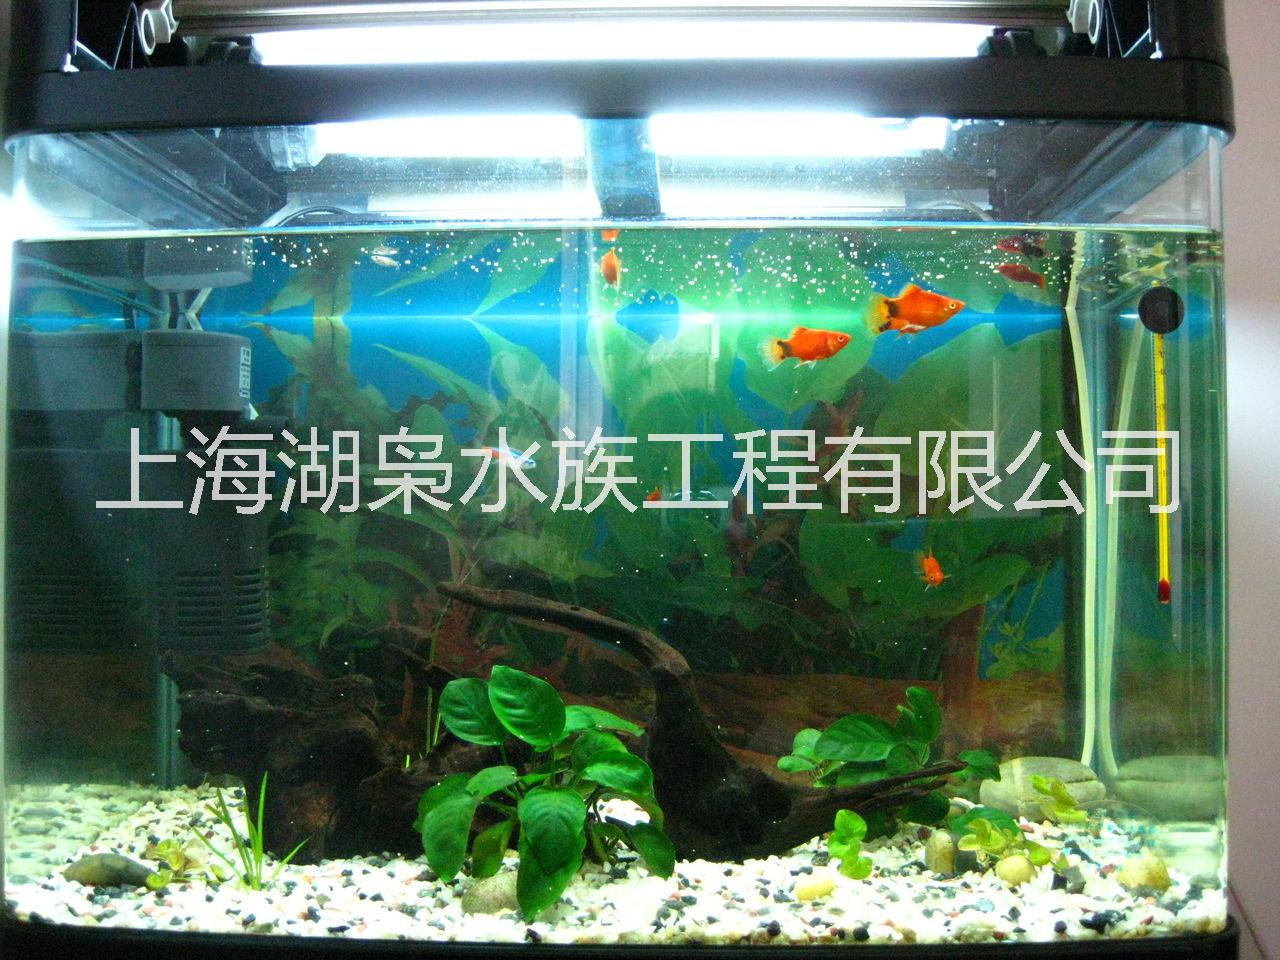 广州办公室鱼缸 办公室鱼缸 厂家价格 办公室鱼缸直销